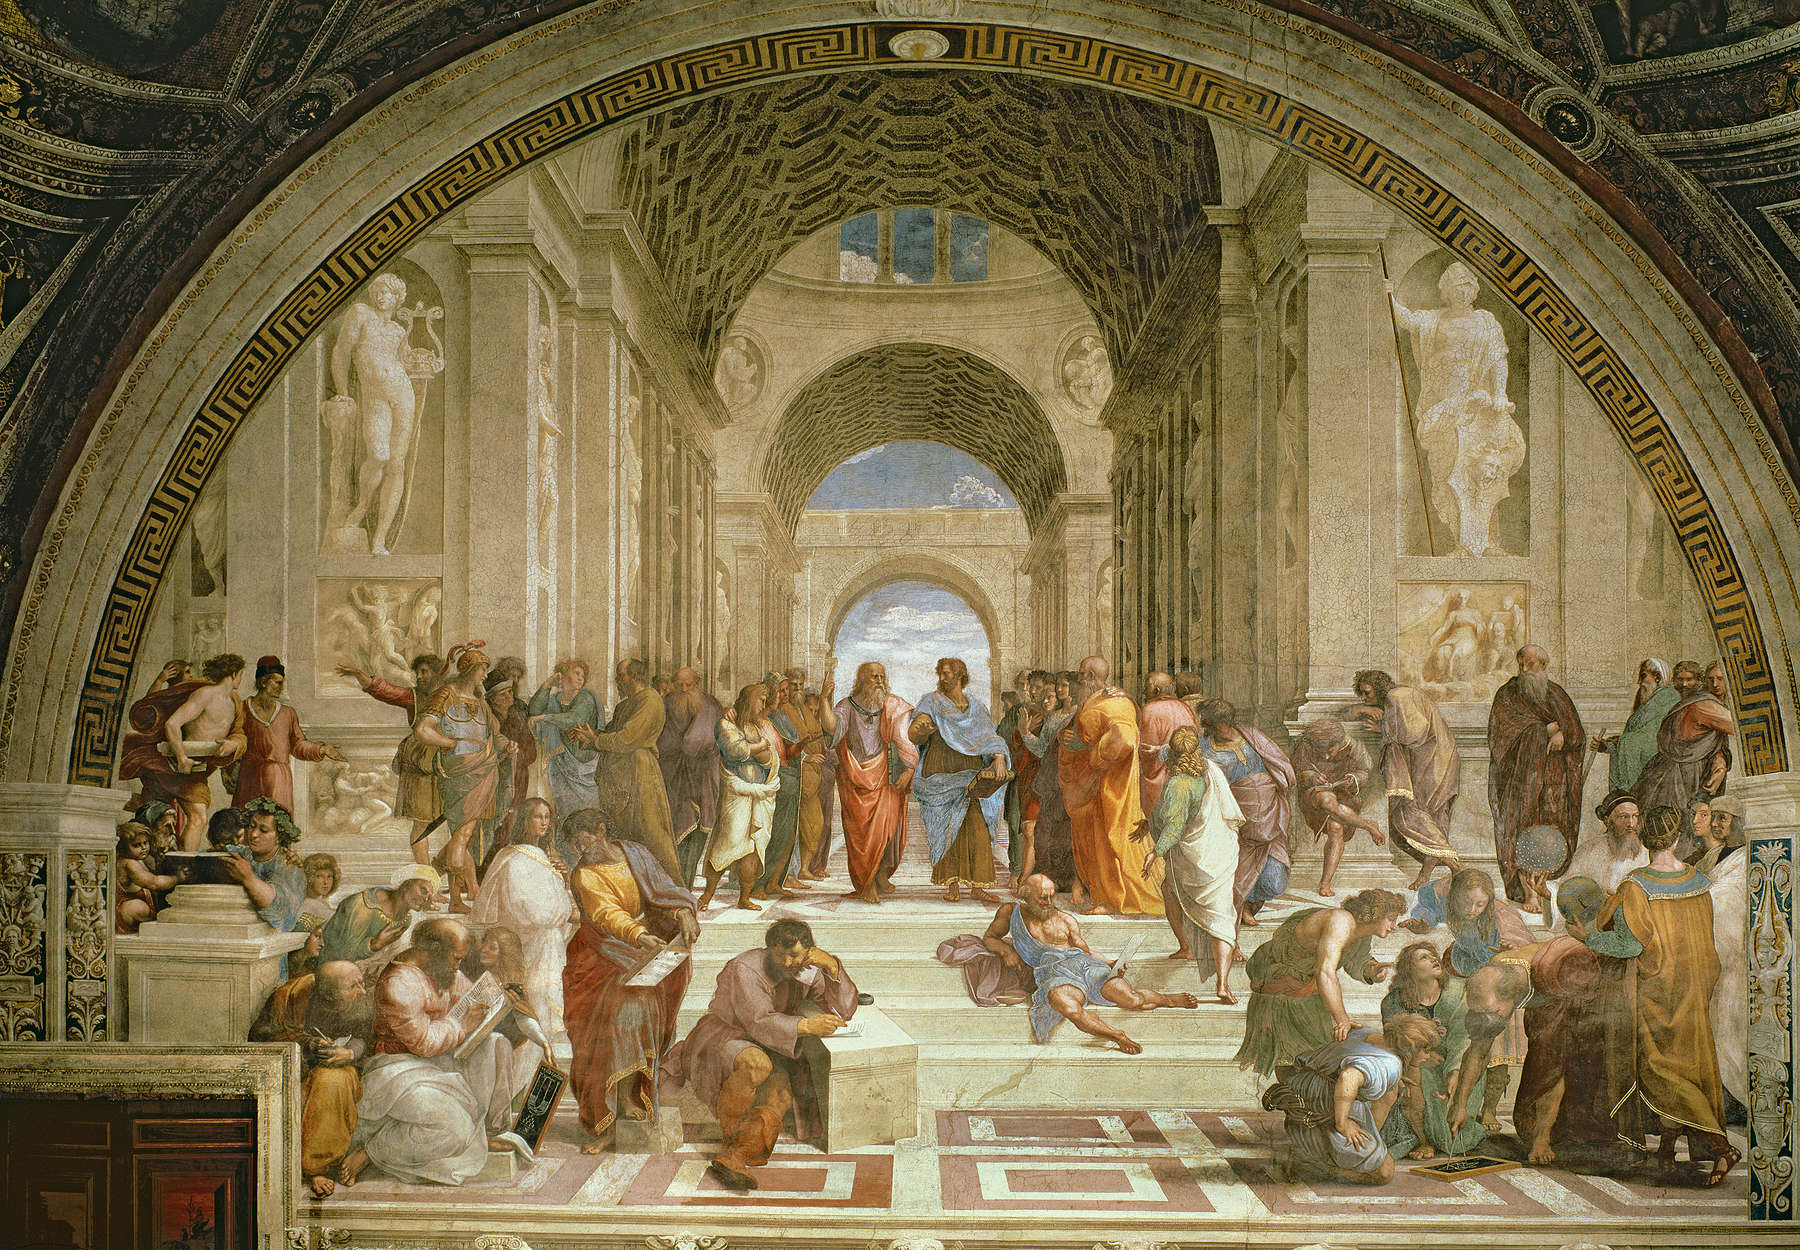             School Athene" muurschildering door Raphael
        